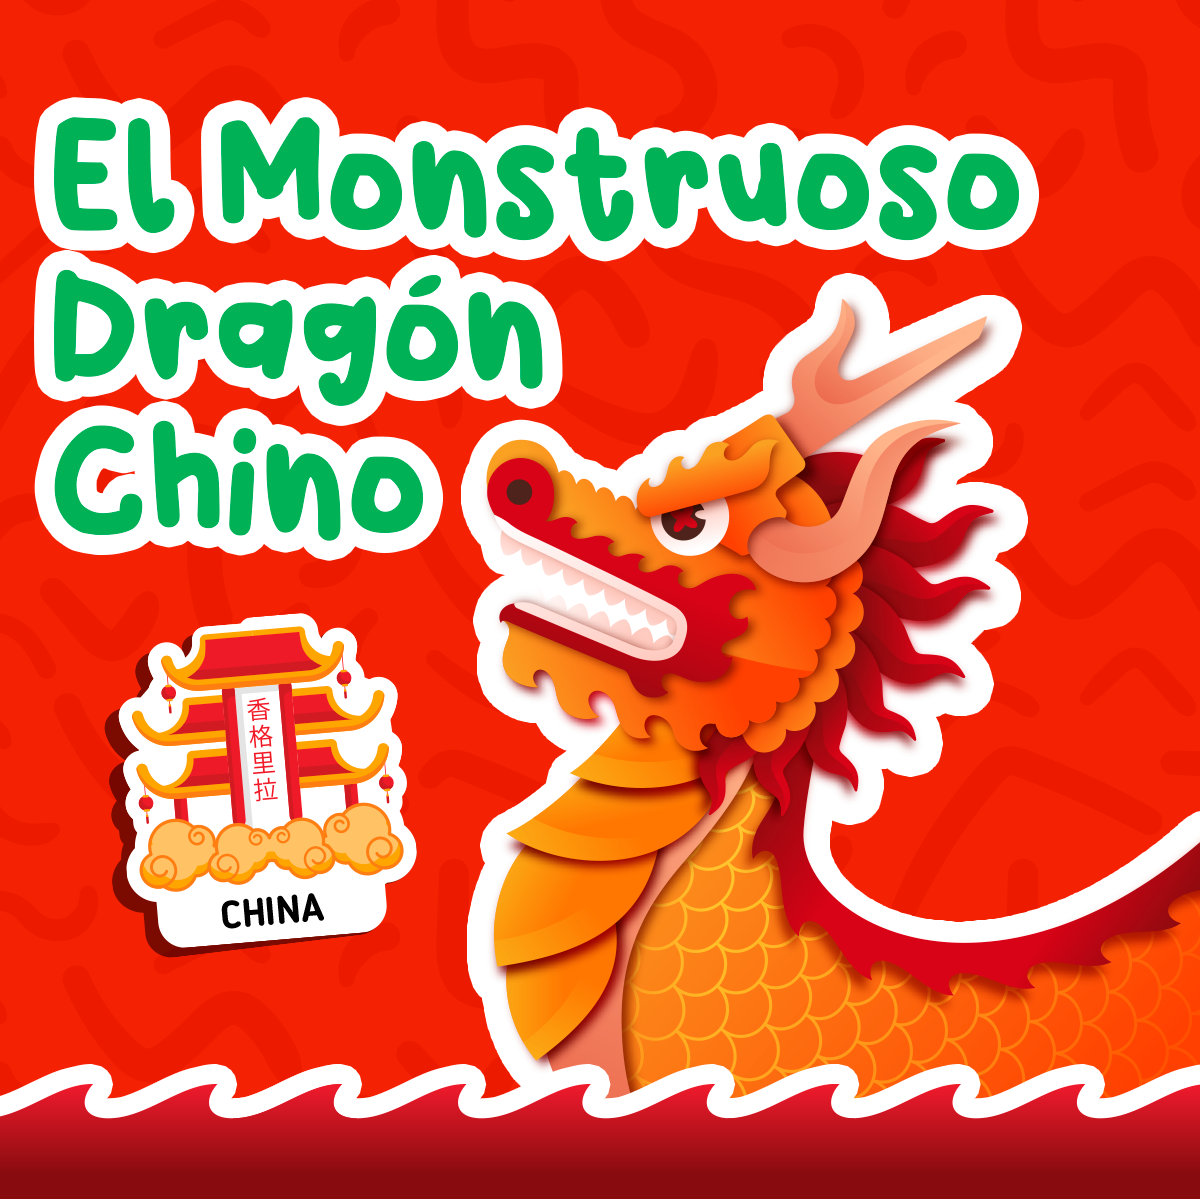 El monstruoso dragón chino